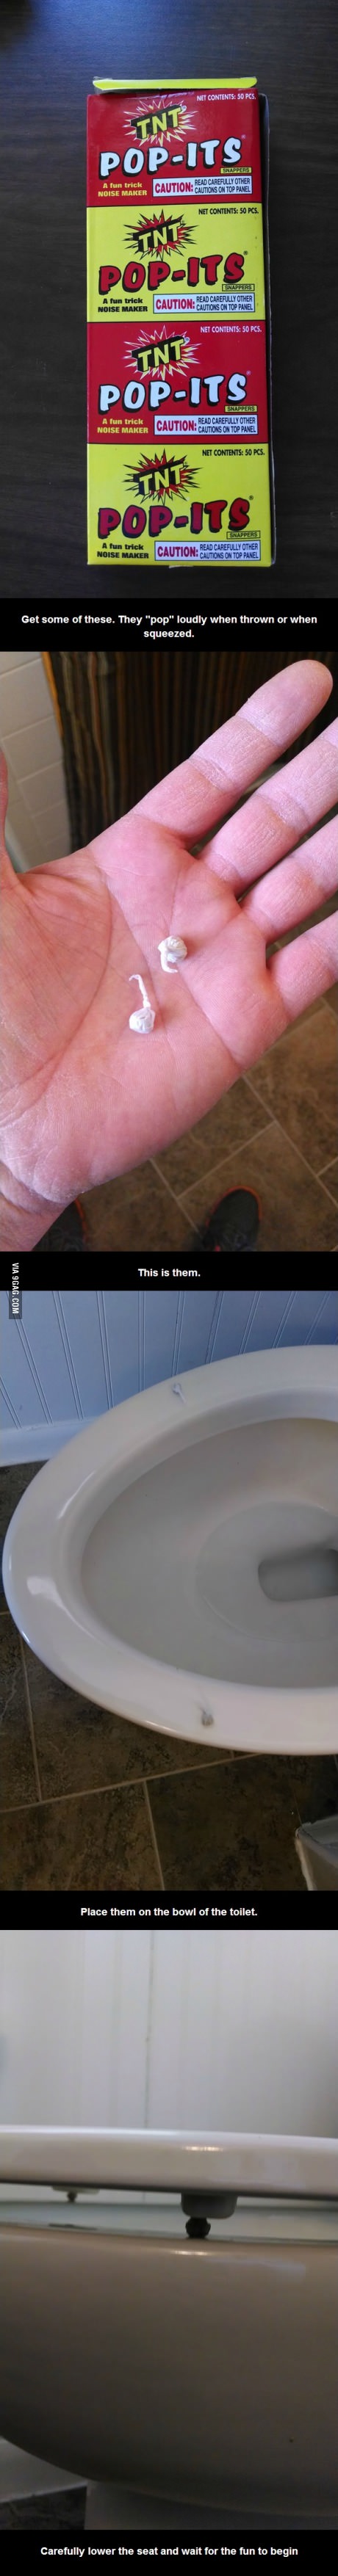 화장실 콩알탄.jpg